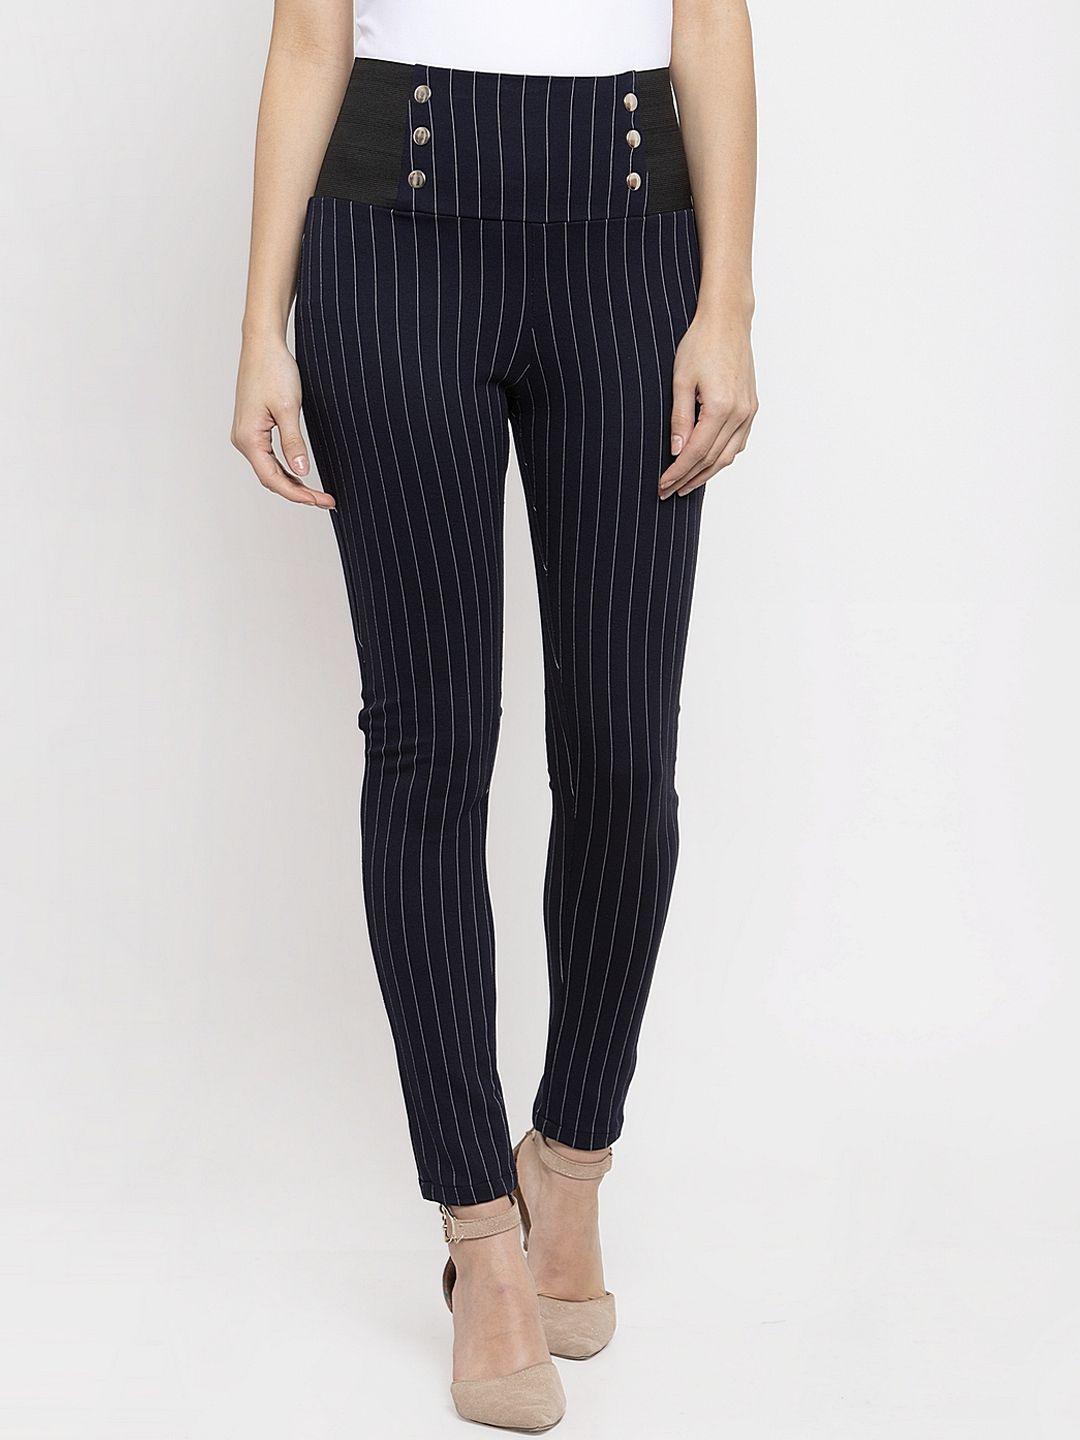 KASSUALLY Women Navy Blue & White Striped Slim-Fit Treggings